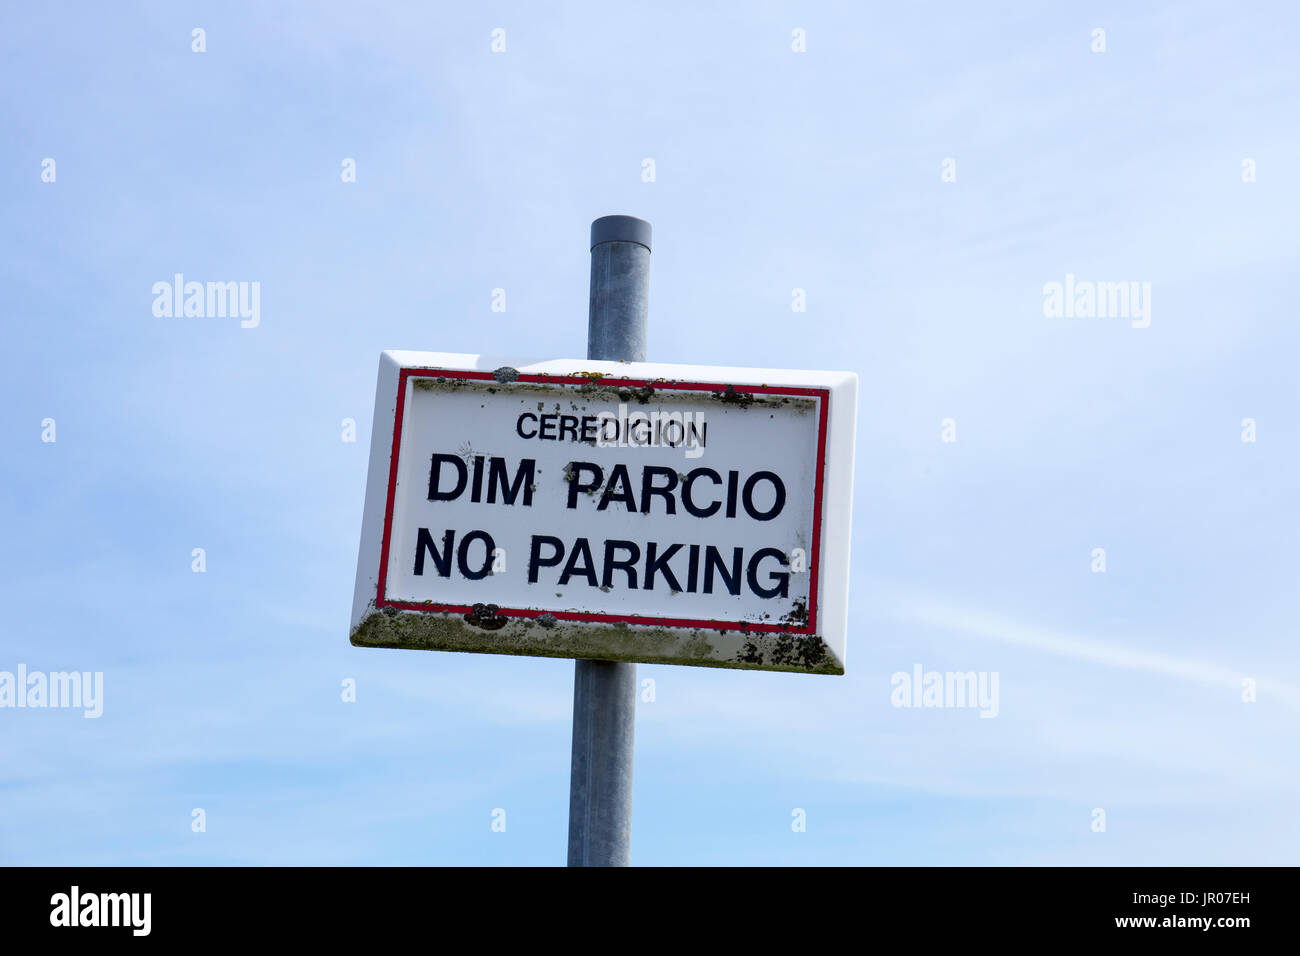 No Parking sign Parcio Dim en anglais et gallois au Pays de Galles, Aberystwyth, Ceredigion UK Banque D'Images